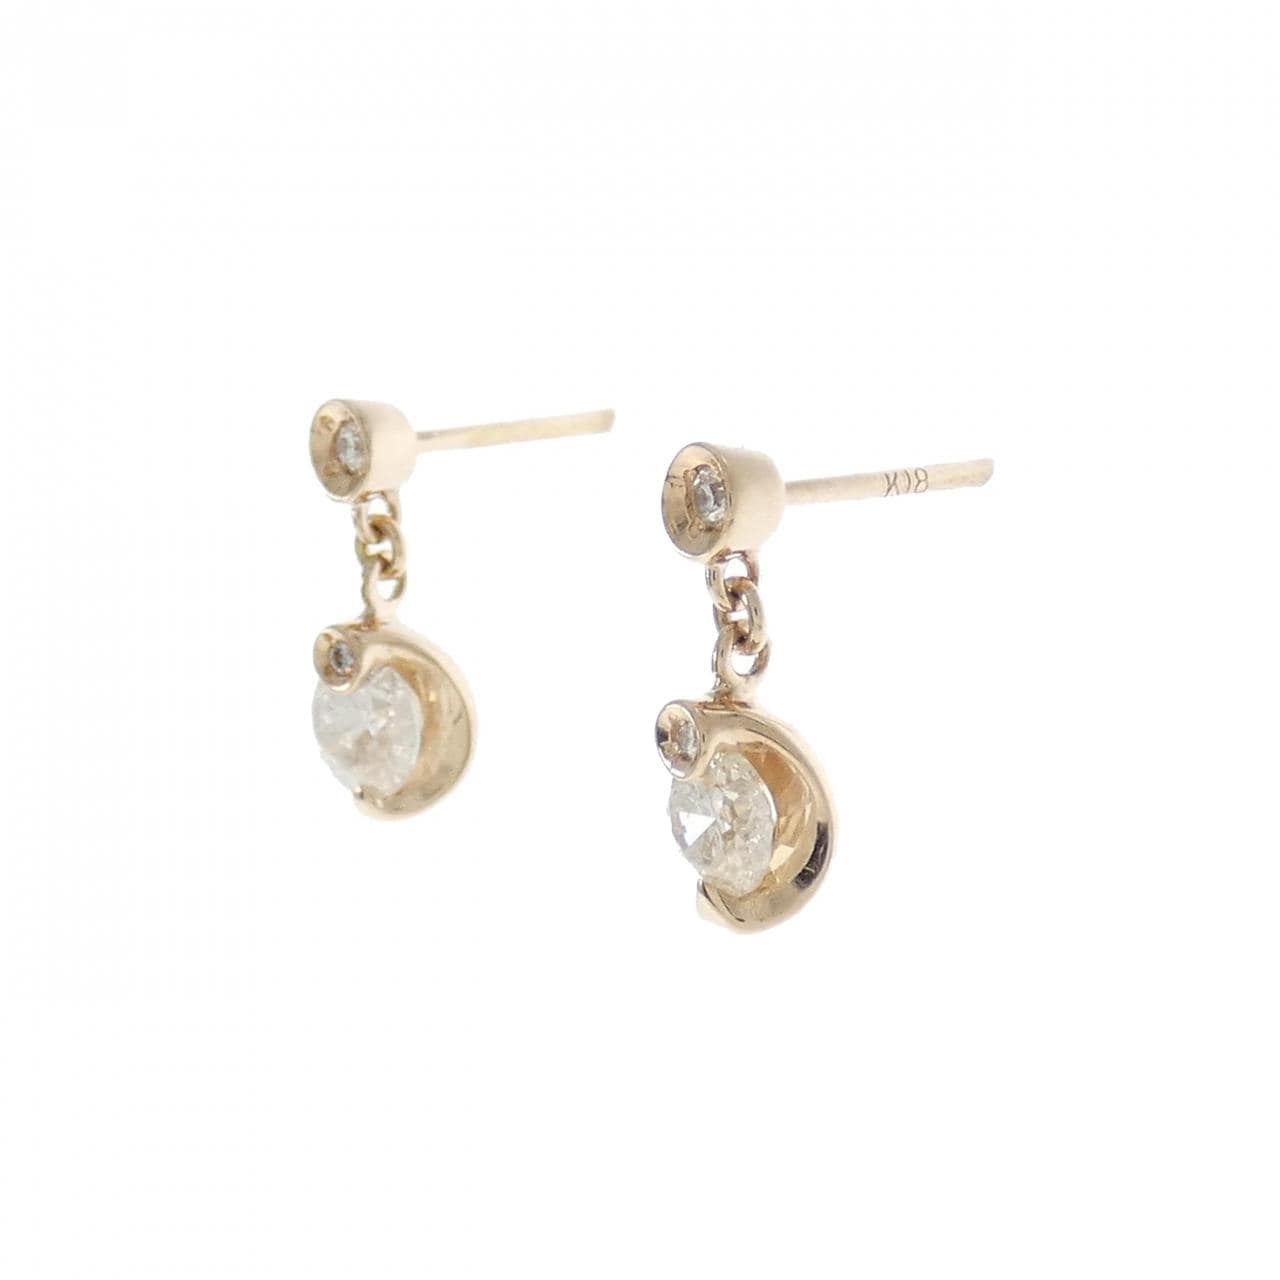 K18PG Diamond earrings 0.474CT